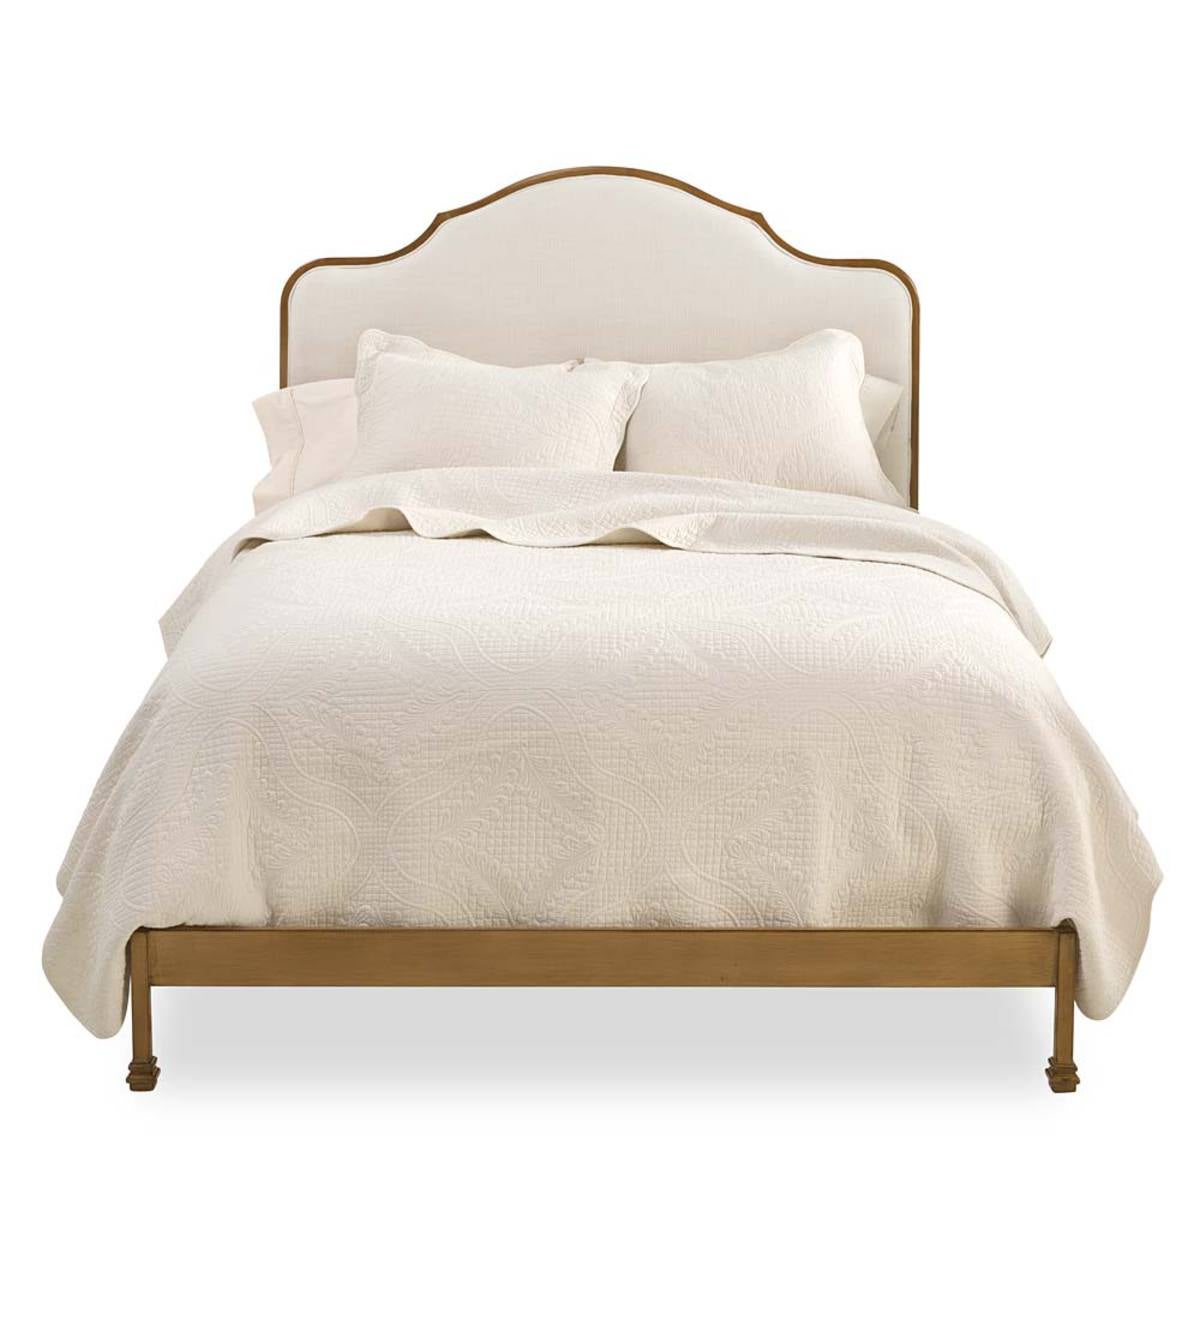 Alexa Queen Bed with Upholstered Headboard